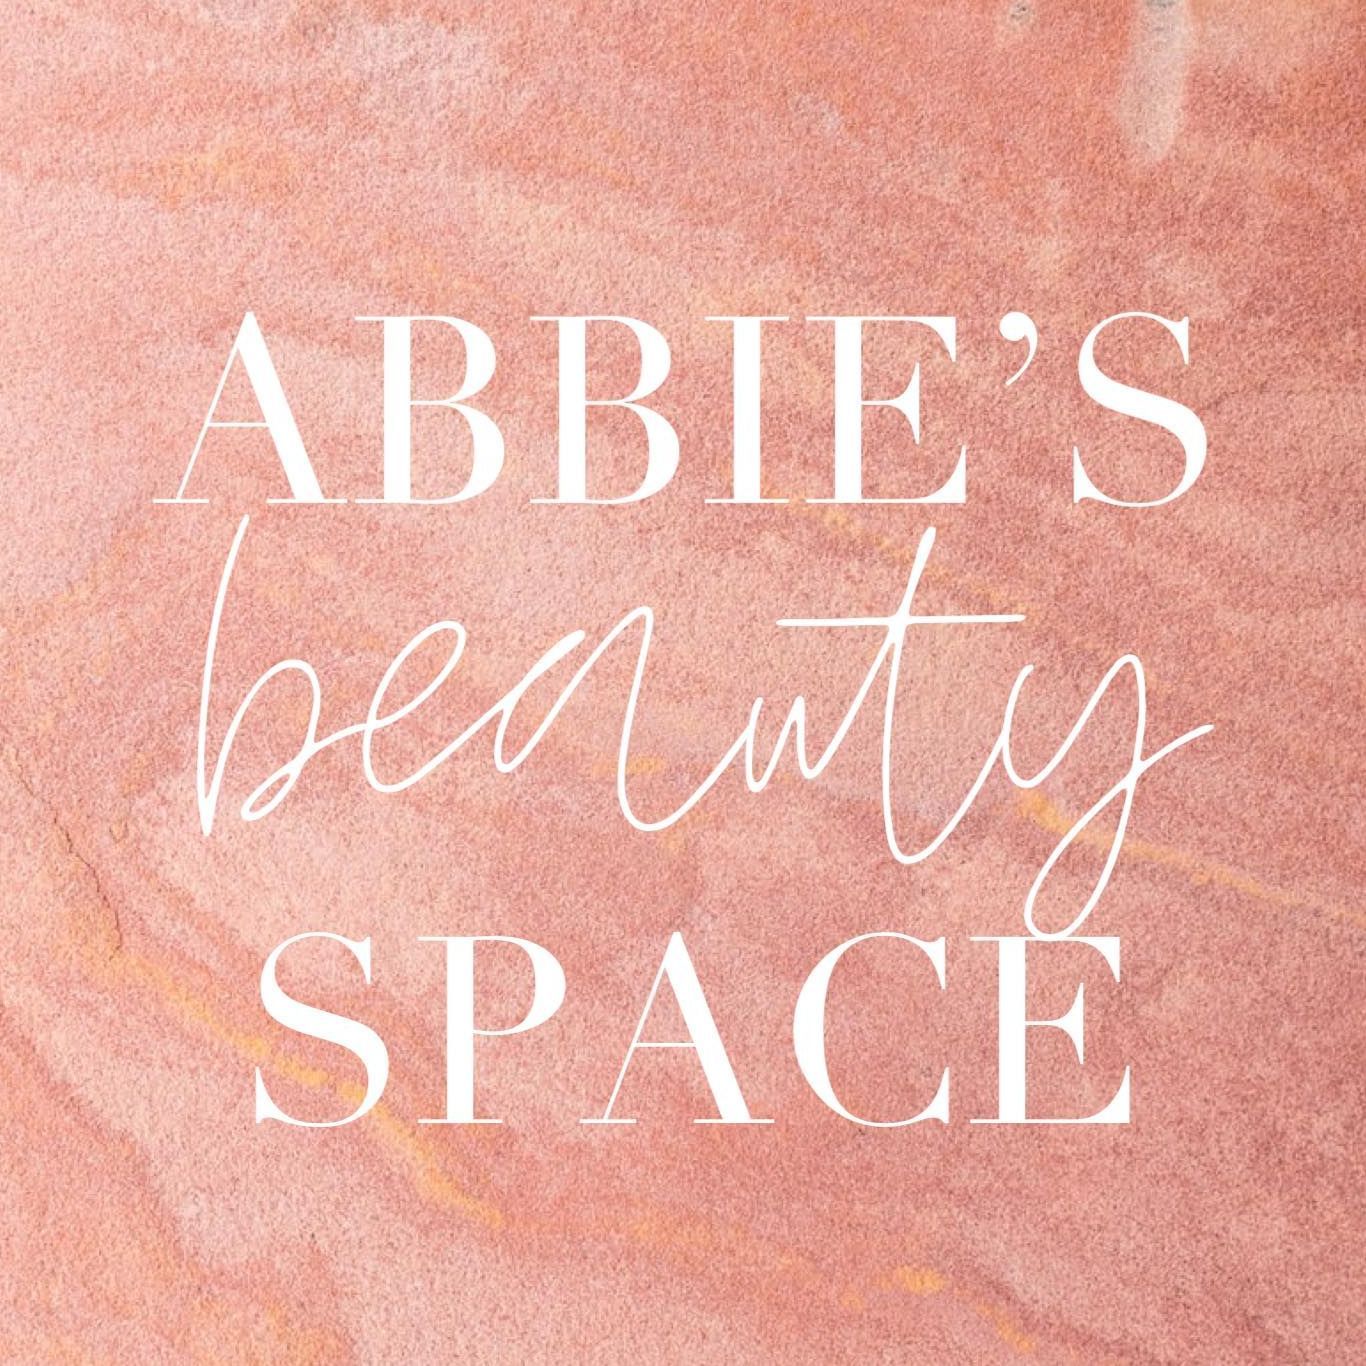 Abbies Beauty Space, 93 Grange Road, DH1 1AQ, Durham